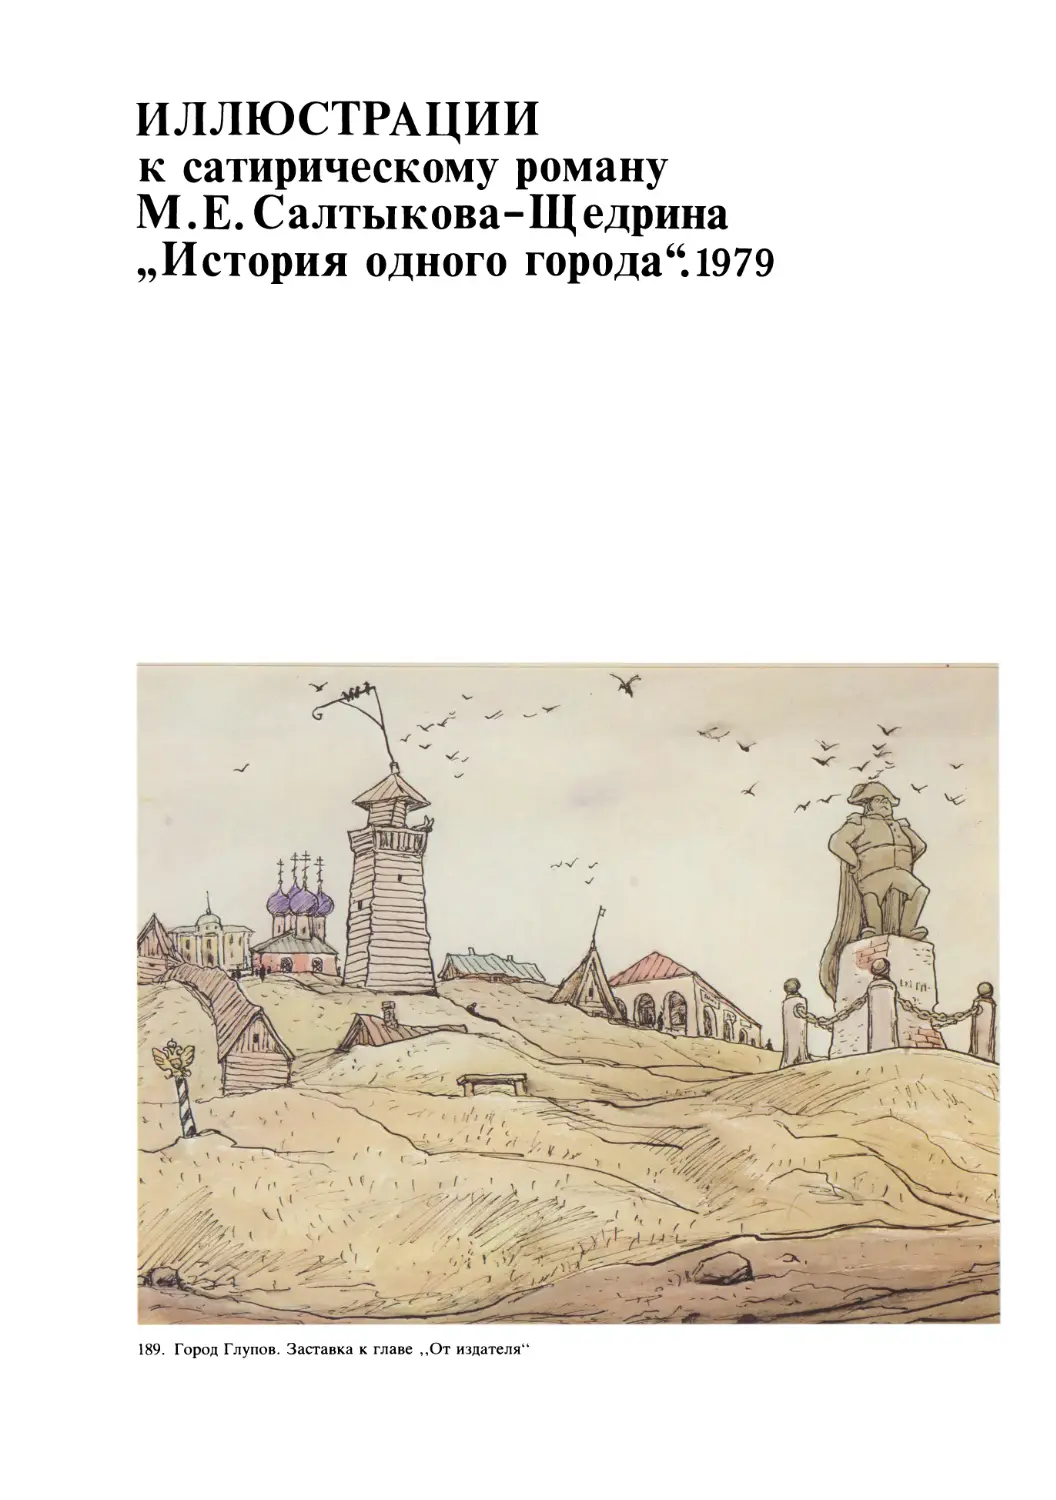 Иллюстрации к сатирическому роману М.Е. Салтыкова-Щедрина „История одного города“.1979